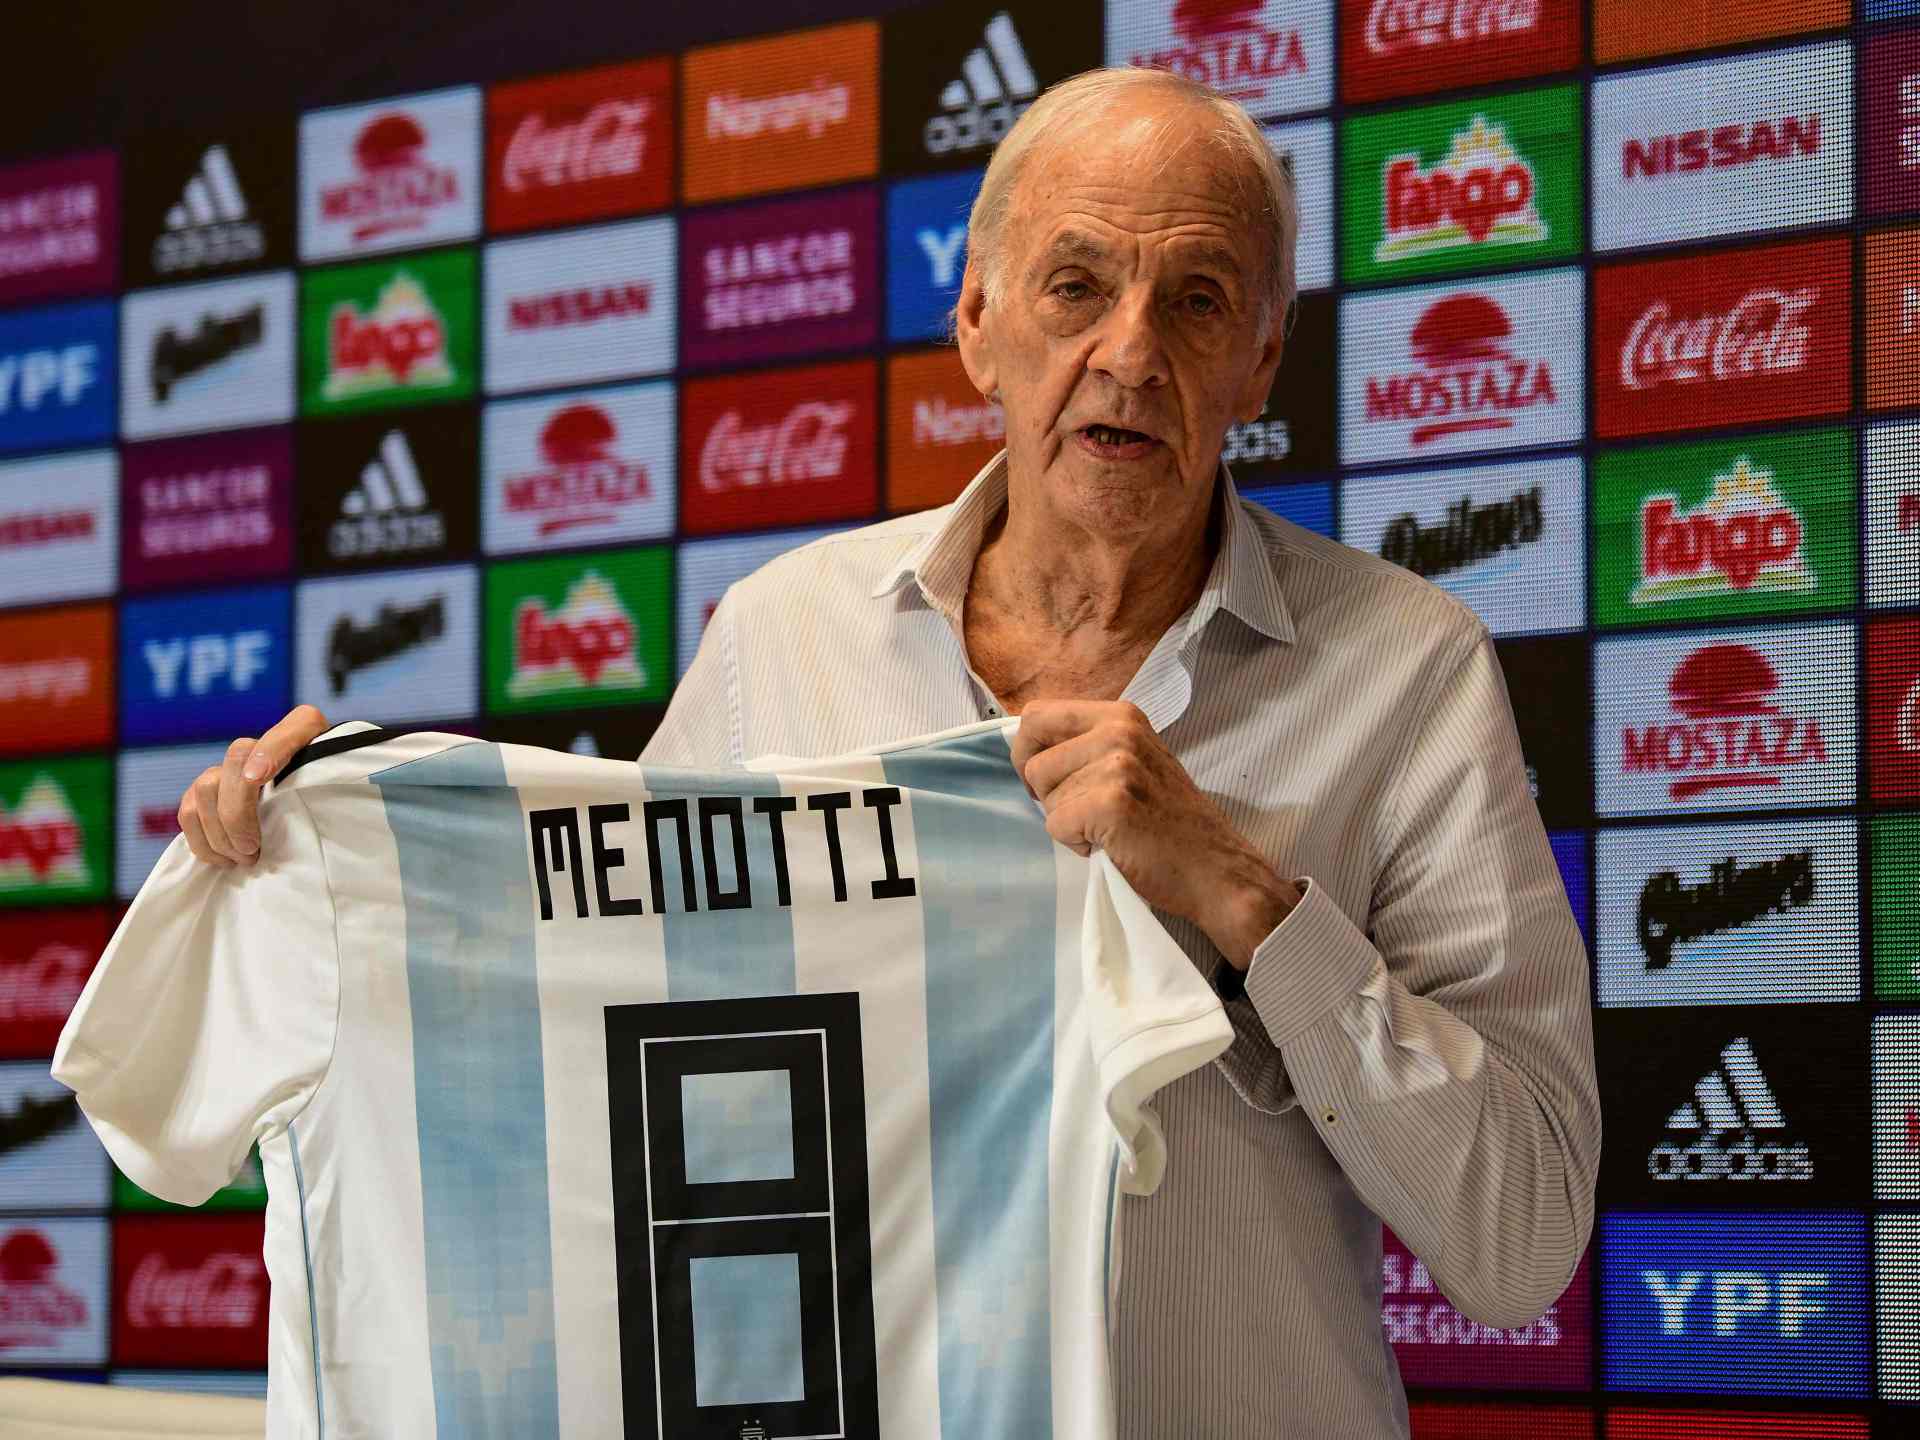 وفاة مينوتي مدرب منتخب الأرجنتين الفائز بمونديال 1978 وميسي يصفه بأحد “العظماء” | رياضة – البوكس نيوز